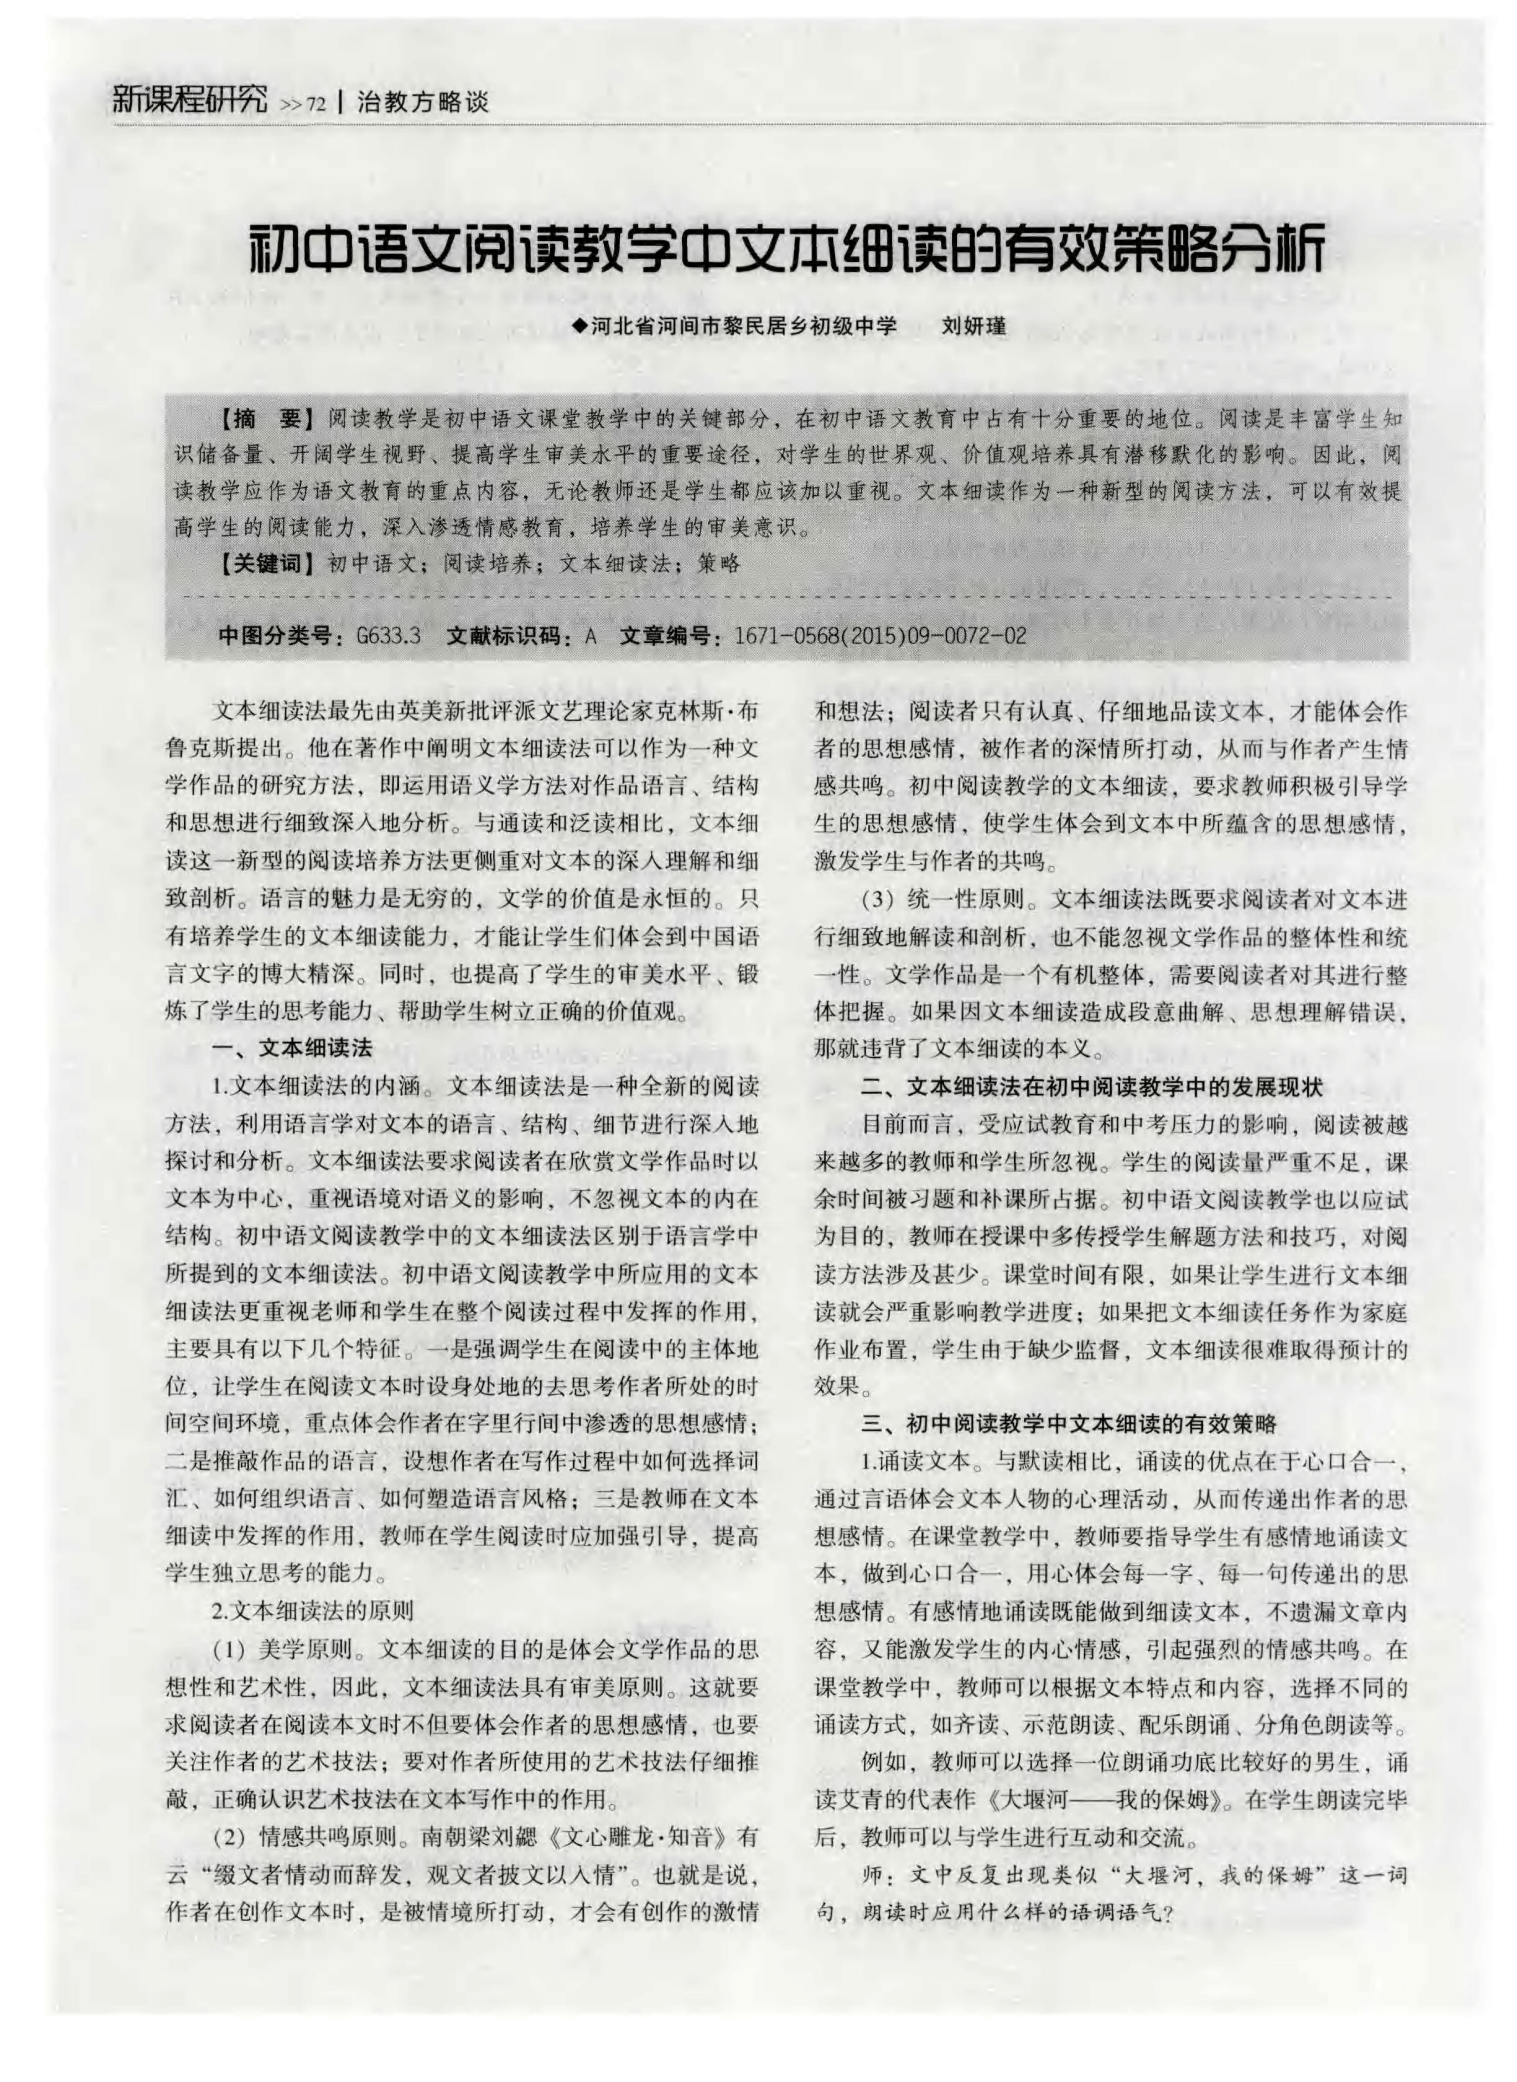 初中语文阅读教学中文本细读的有效策略分析